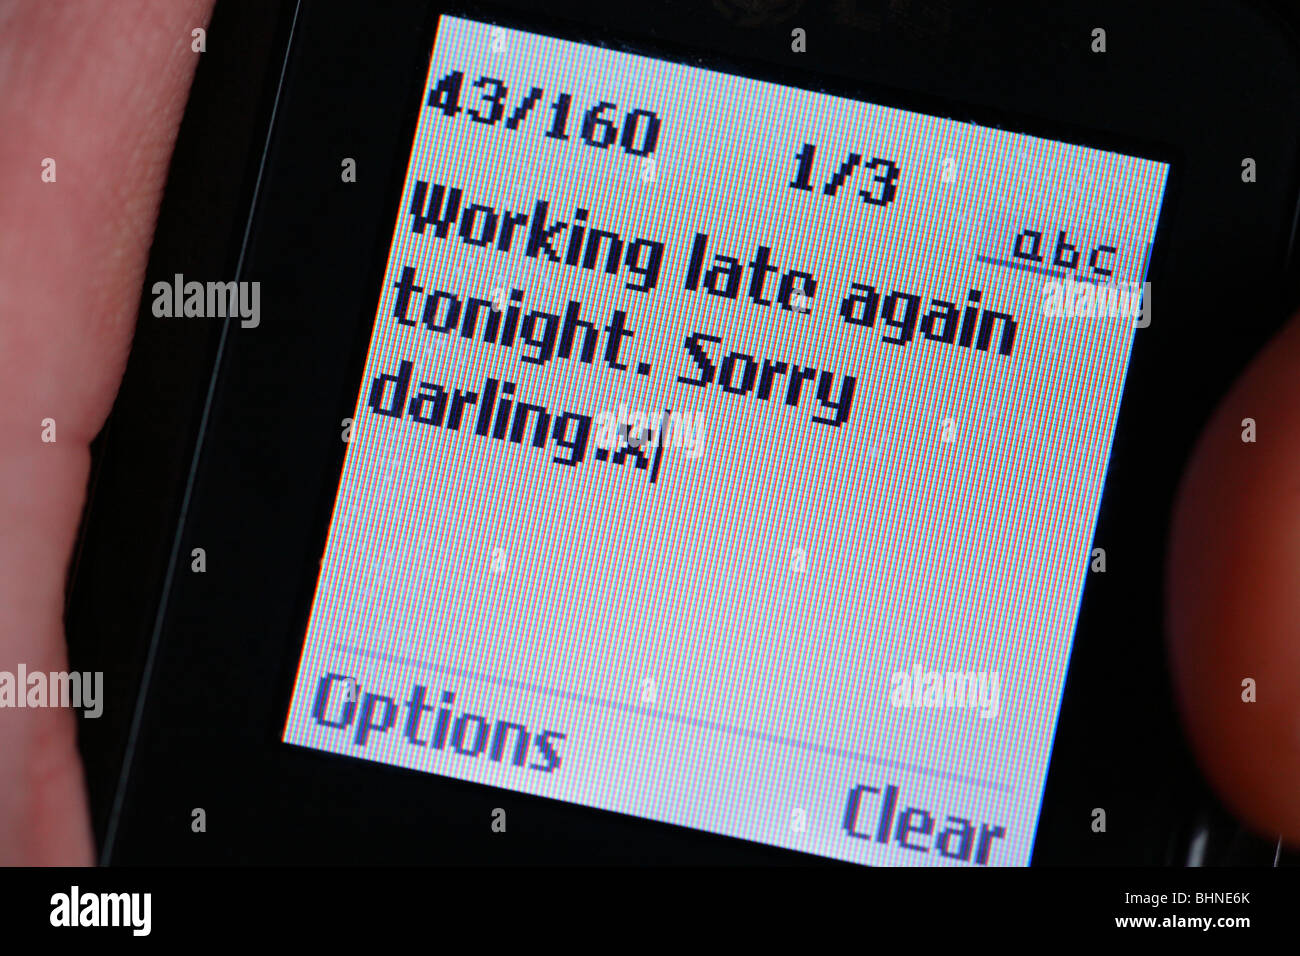 Messaggio di testo su un telefono cellulare affermando che "lavora fino a tardi stasera. Siamo spiacenti darling.x' Foto Stock